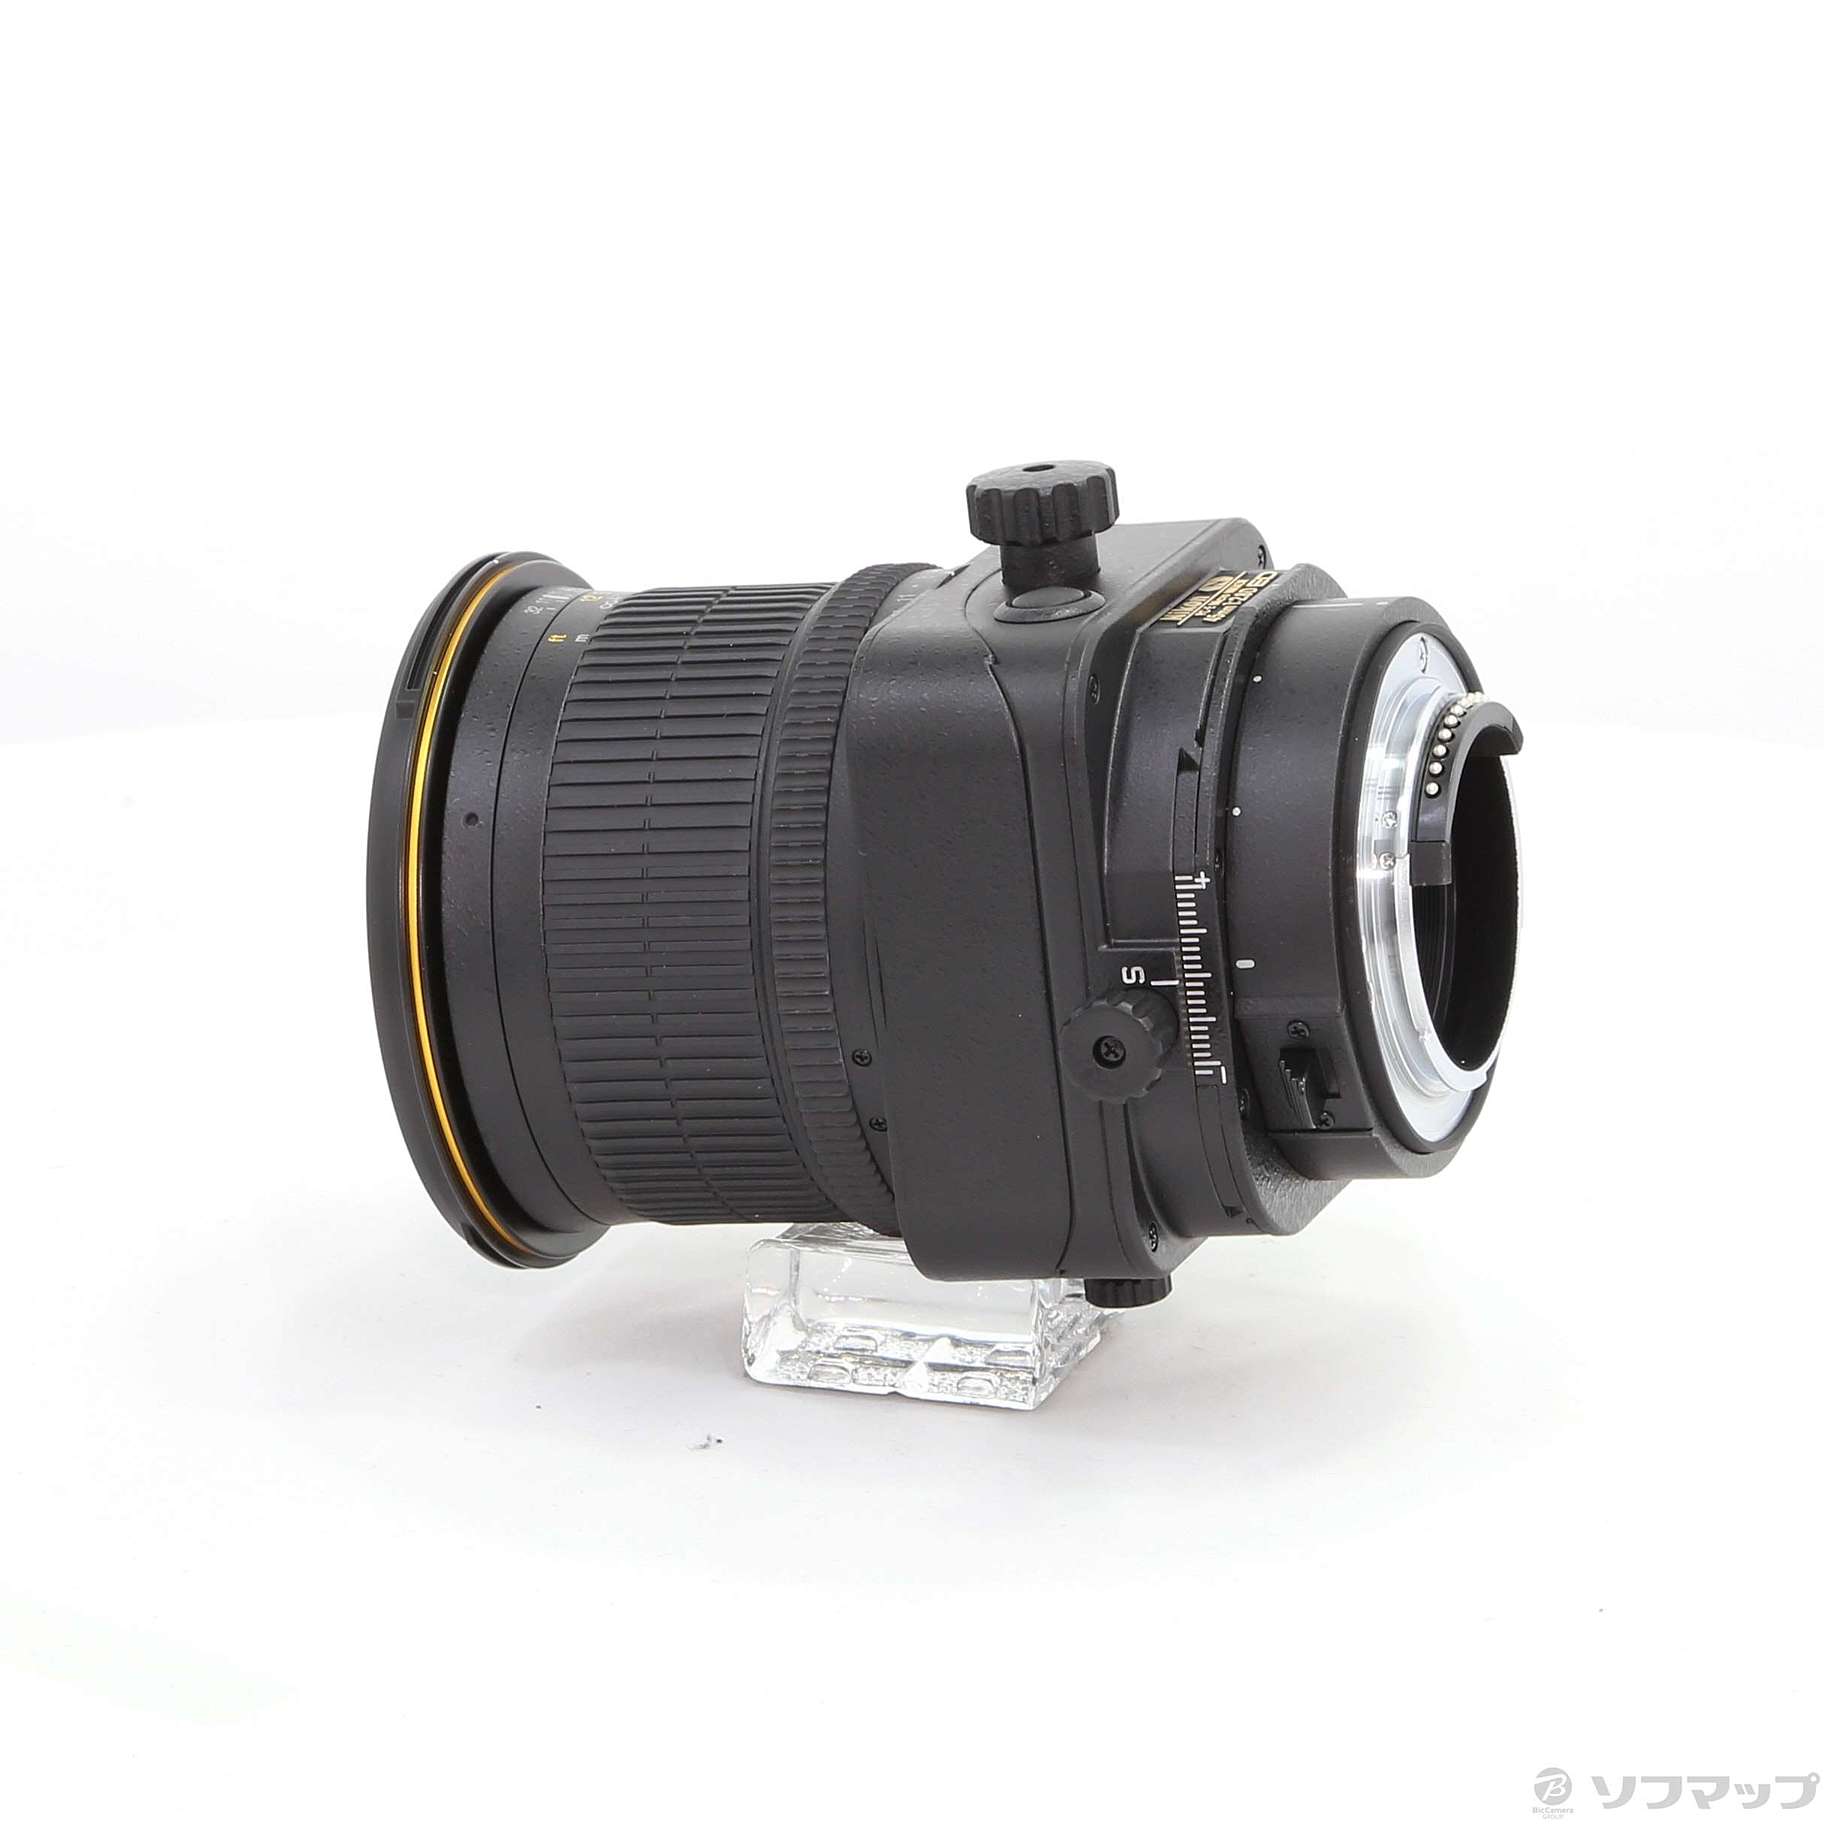 Nikon PCレンズ PC-E NIKKOR 24mm f 3.5D ED フルサイズ対応